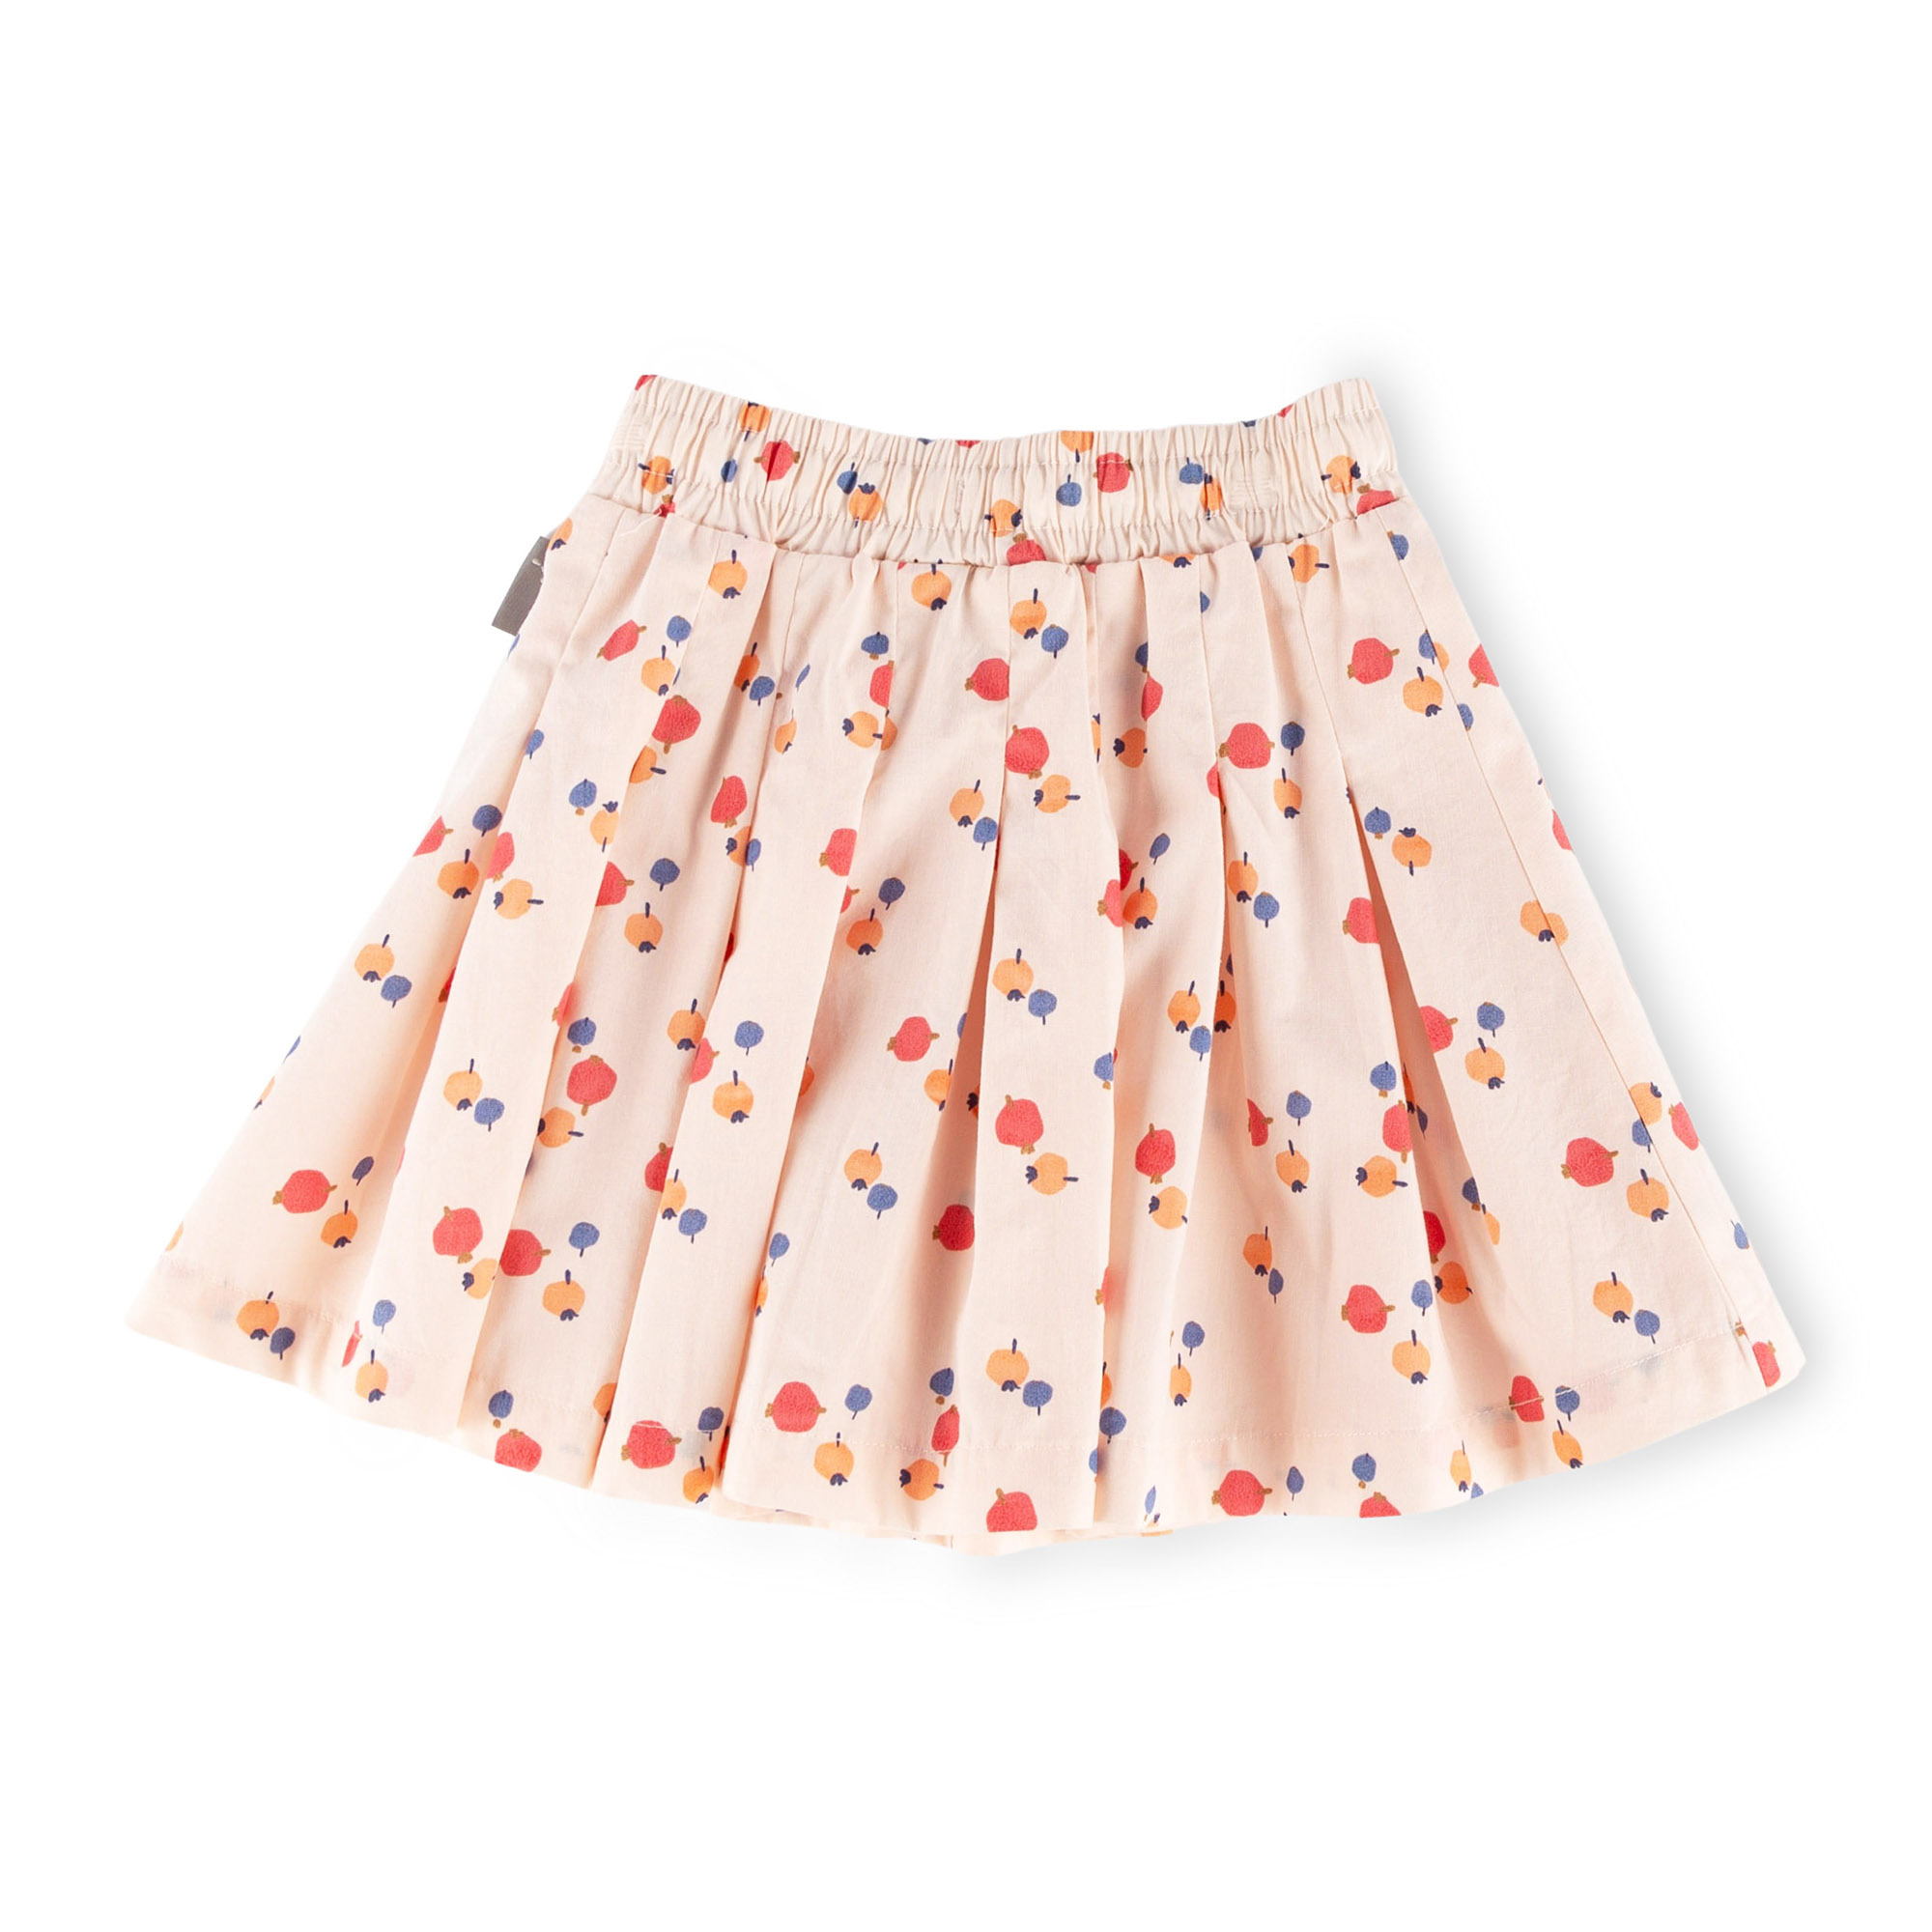 Children's pleated batiste skirt, berry print